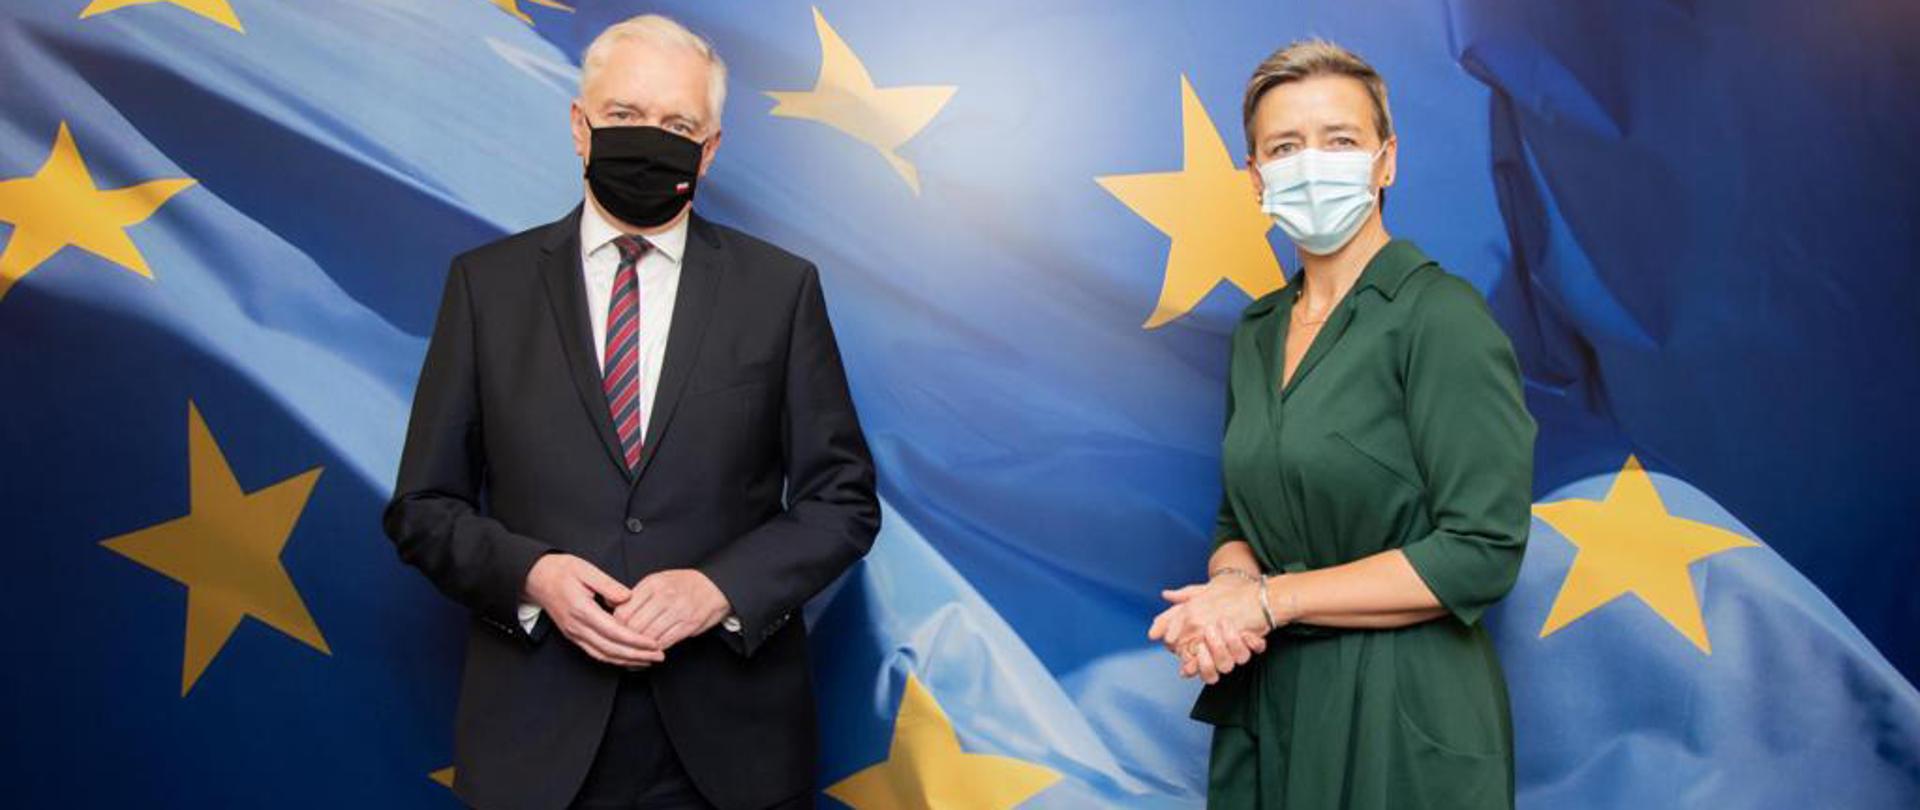 Wicepremier, minister rozwoju, pracy i technologii Jarosław Gowin w maseczce na twarzy, po jego prawej stronie stoi Wiceprzewodnicząca Wykonawcza Komisji Europejskiej ds. konkurencji Margrethe Vestager. Z tyłu flaga UE.